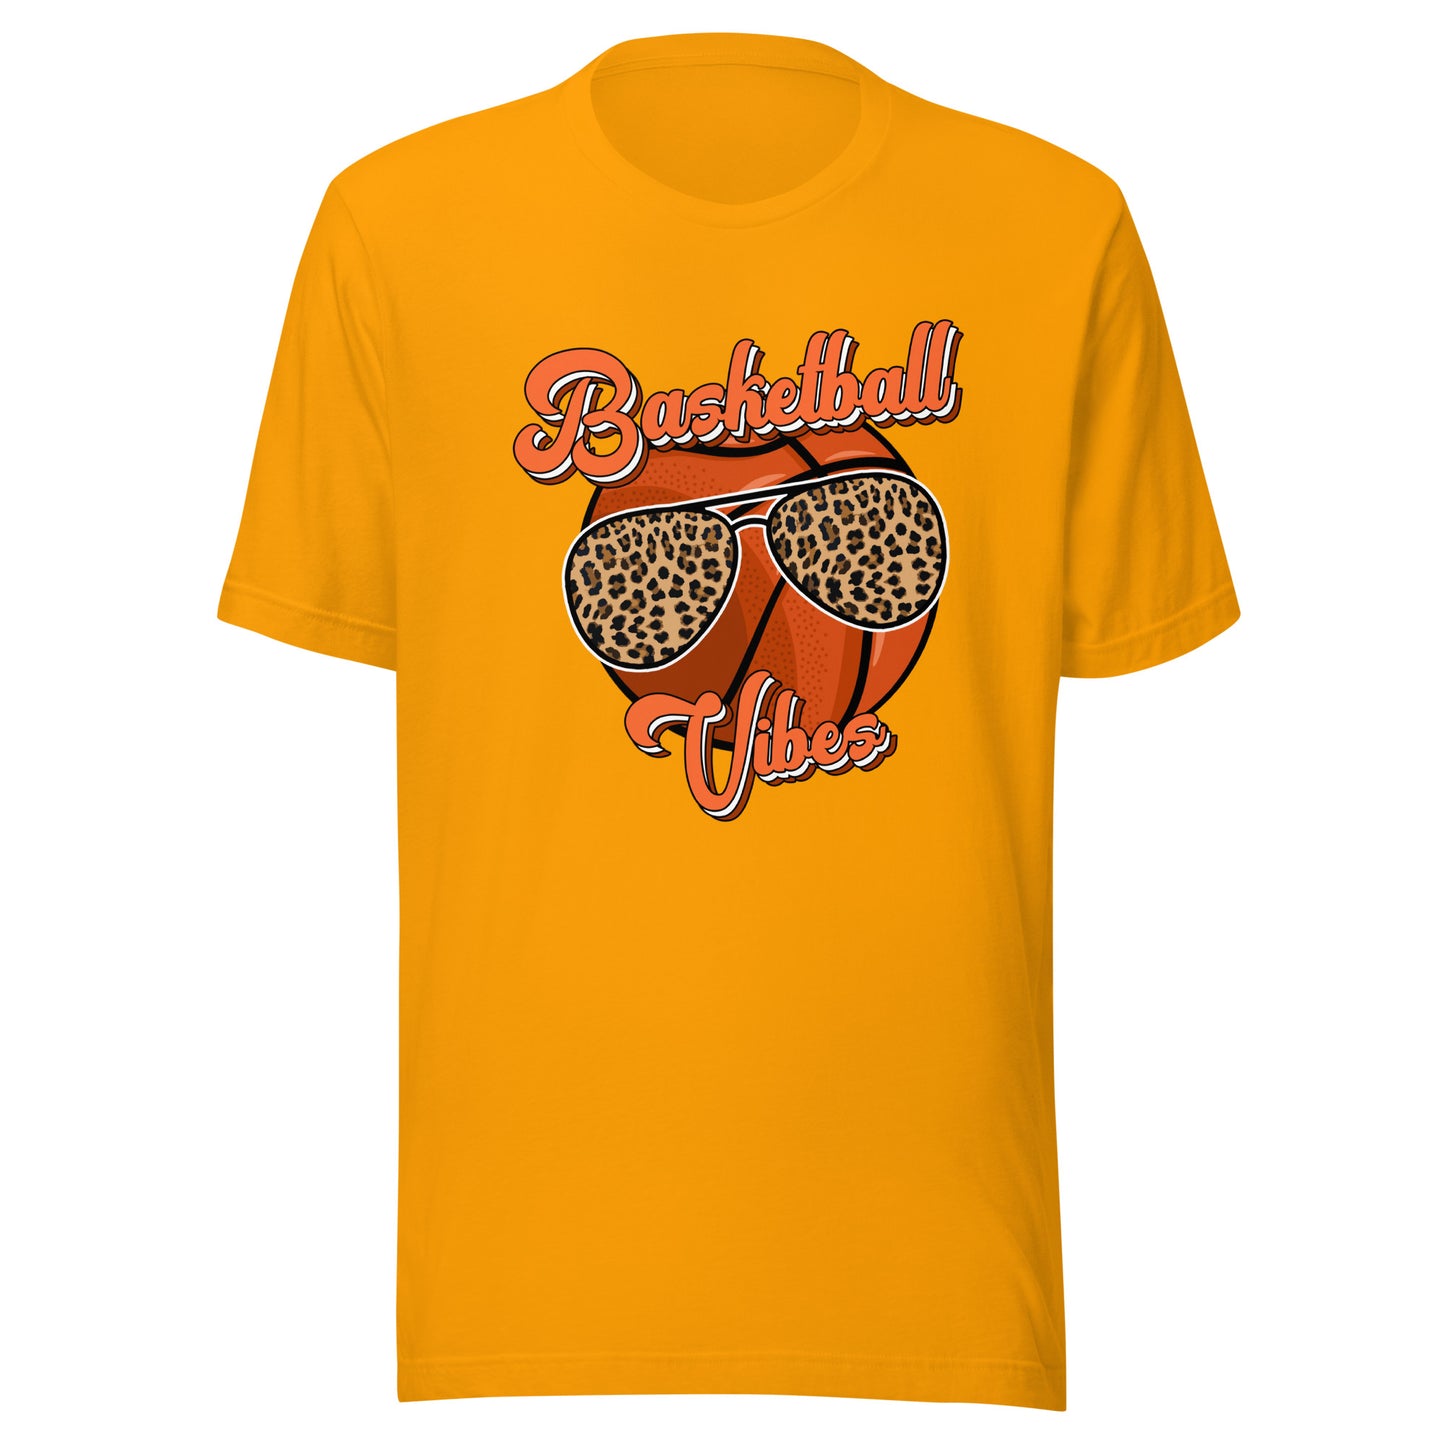 "Basketball Vibes" T-shirt